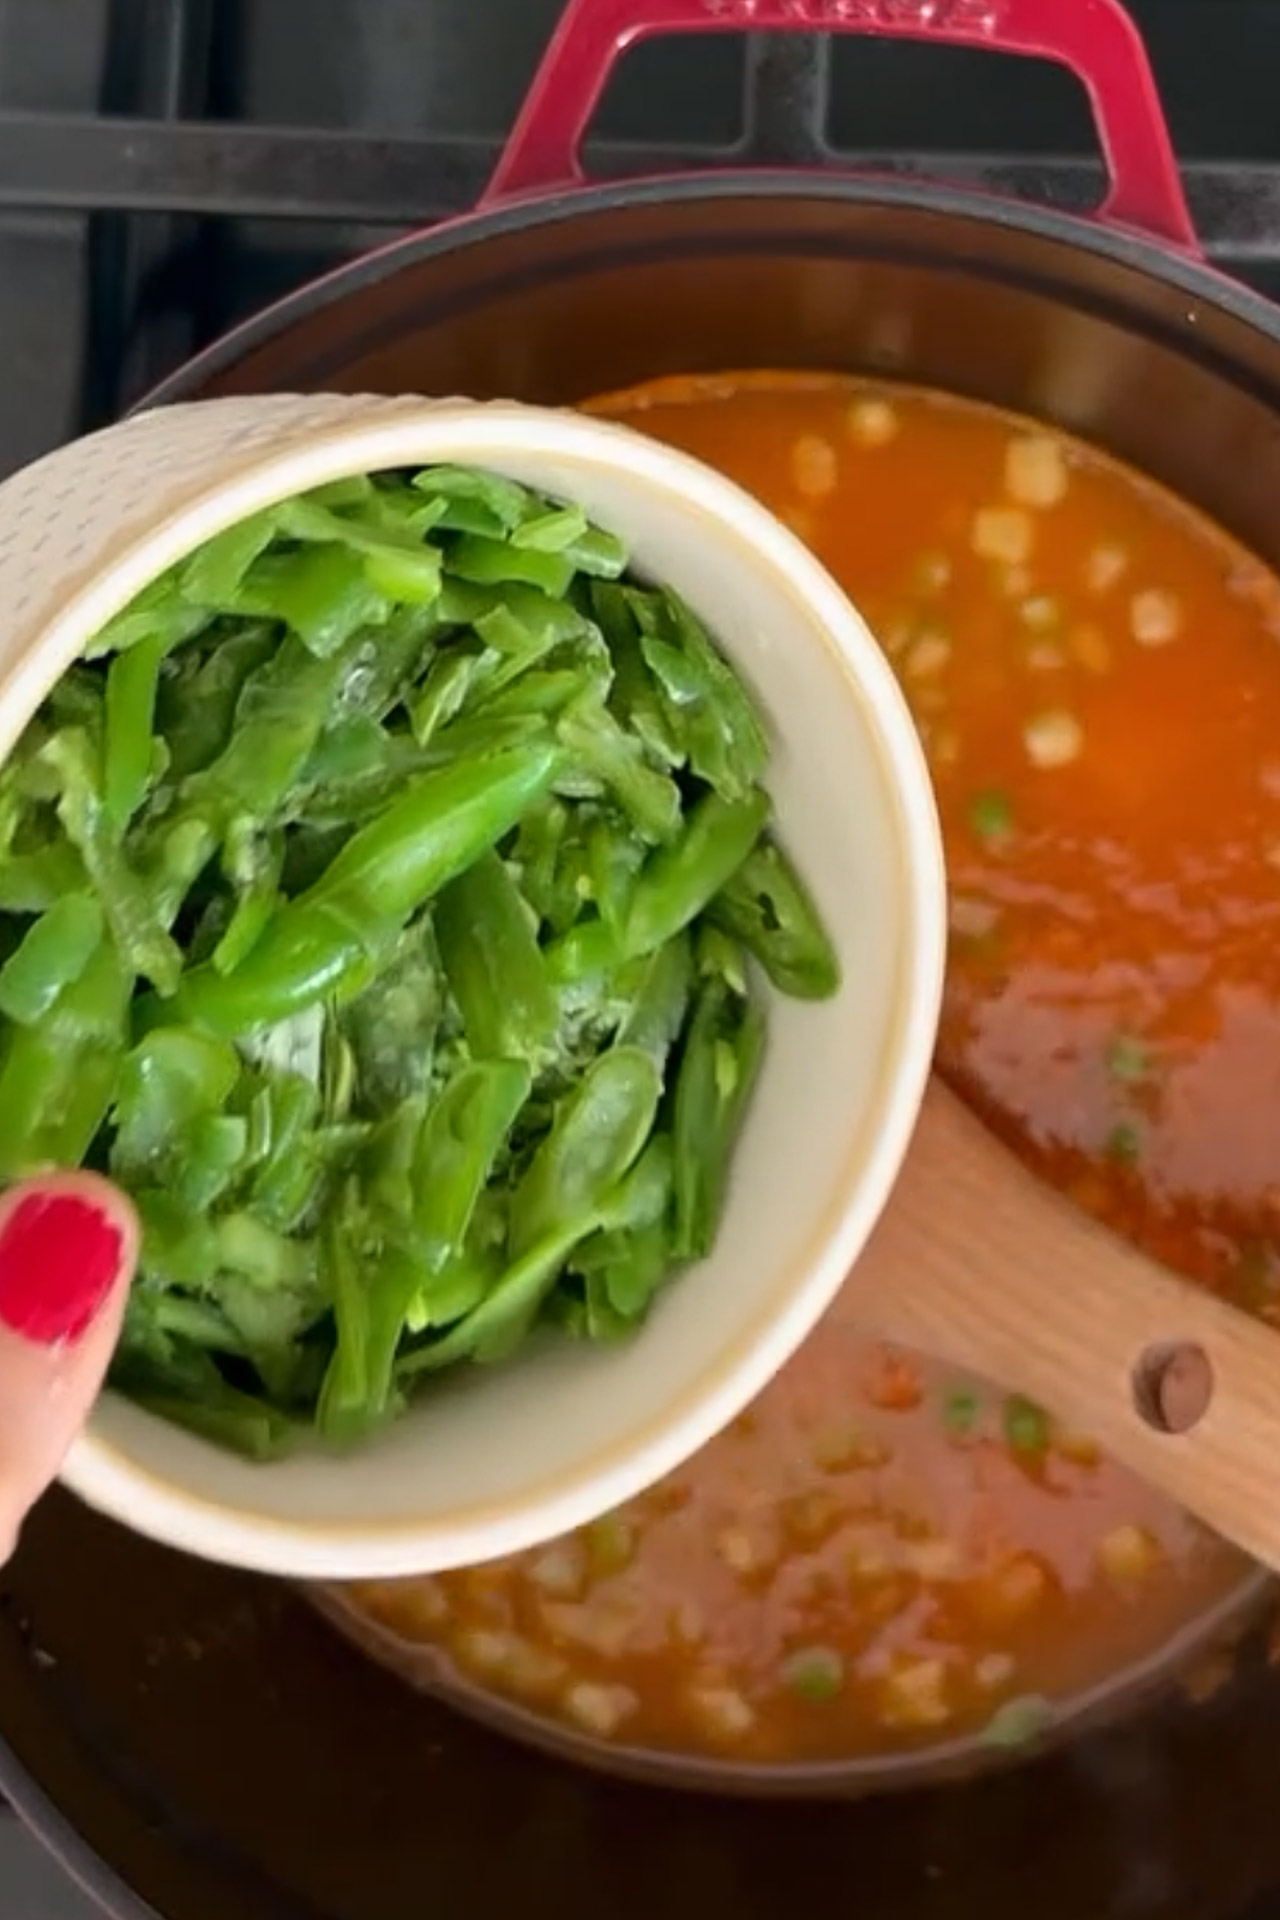 Una persona está removiendo unos frijoles verdes en una olla de sopa saludable.